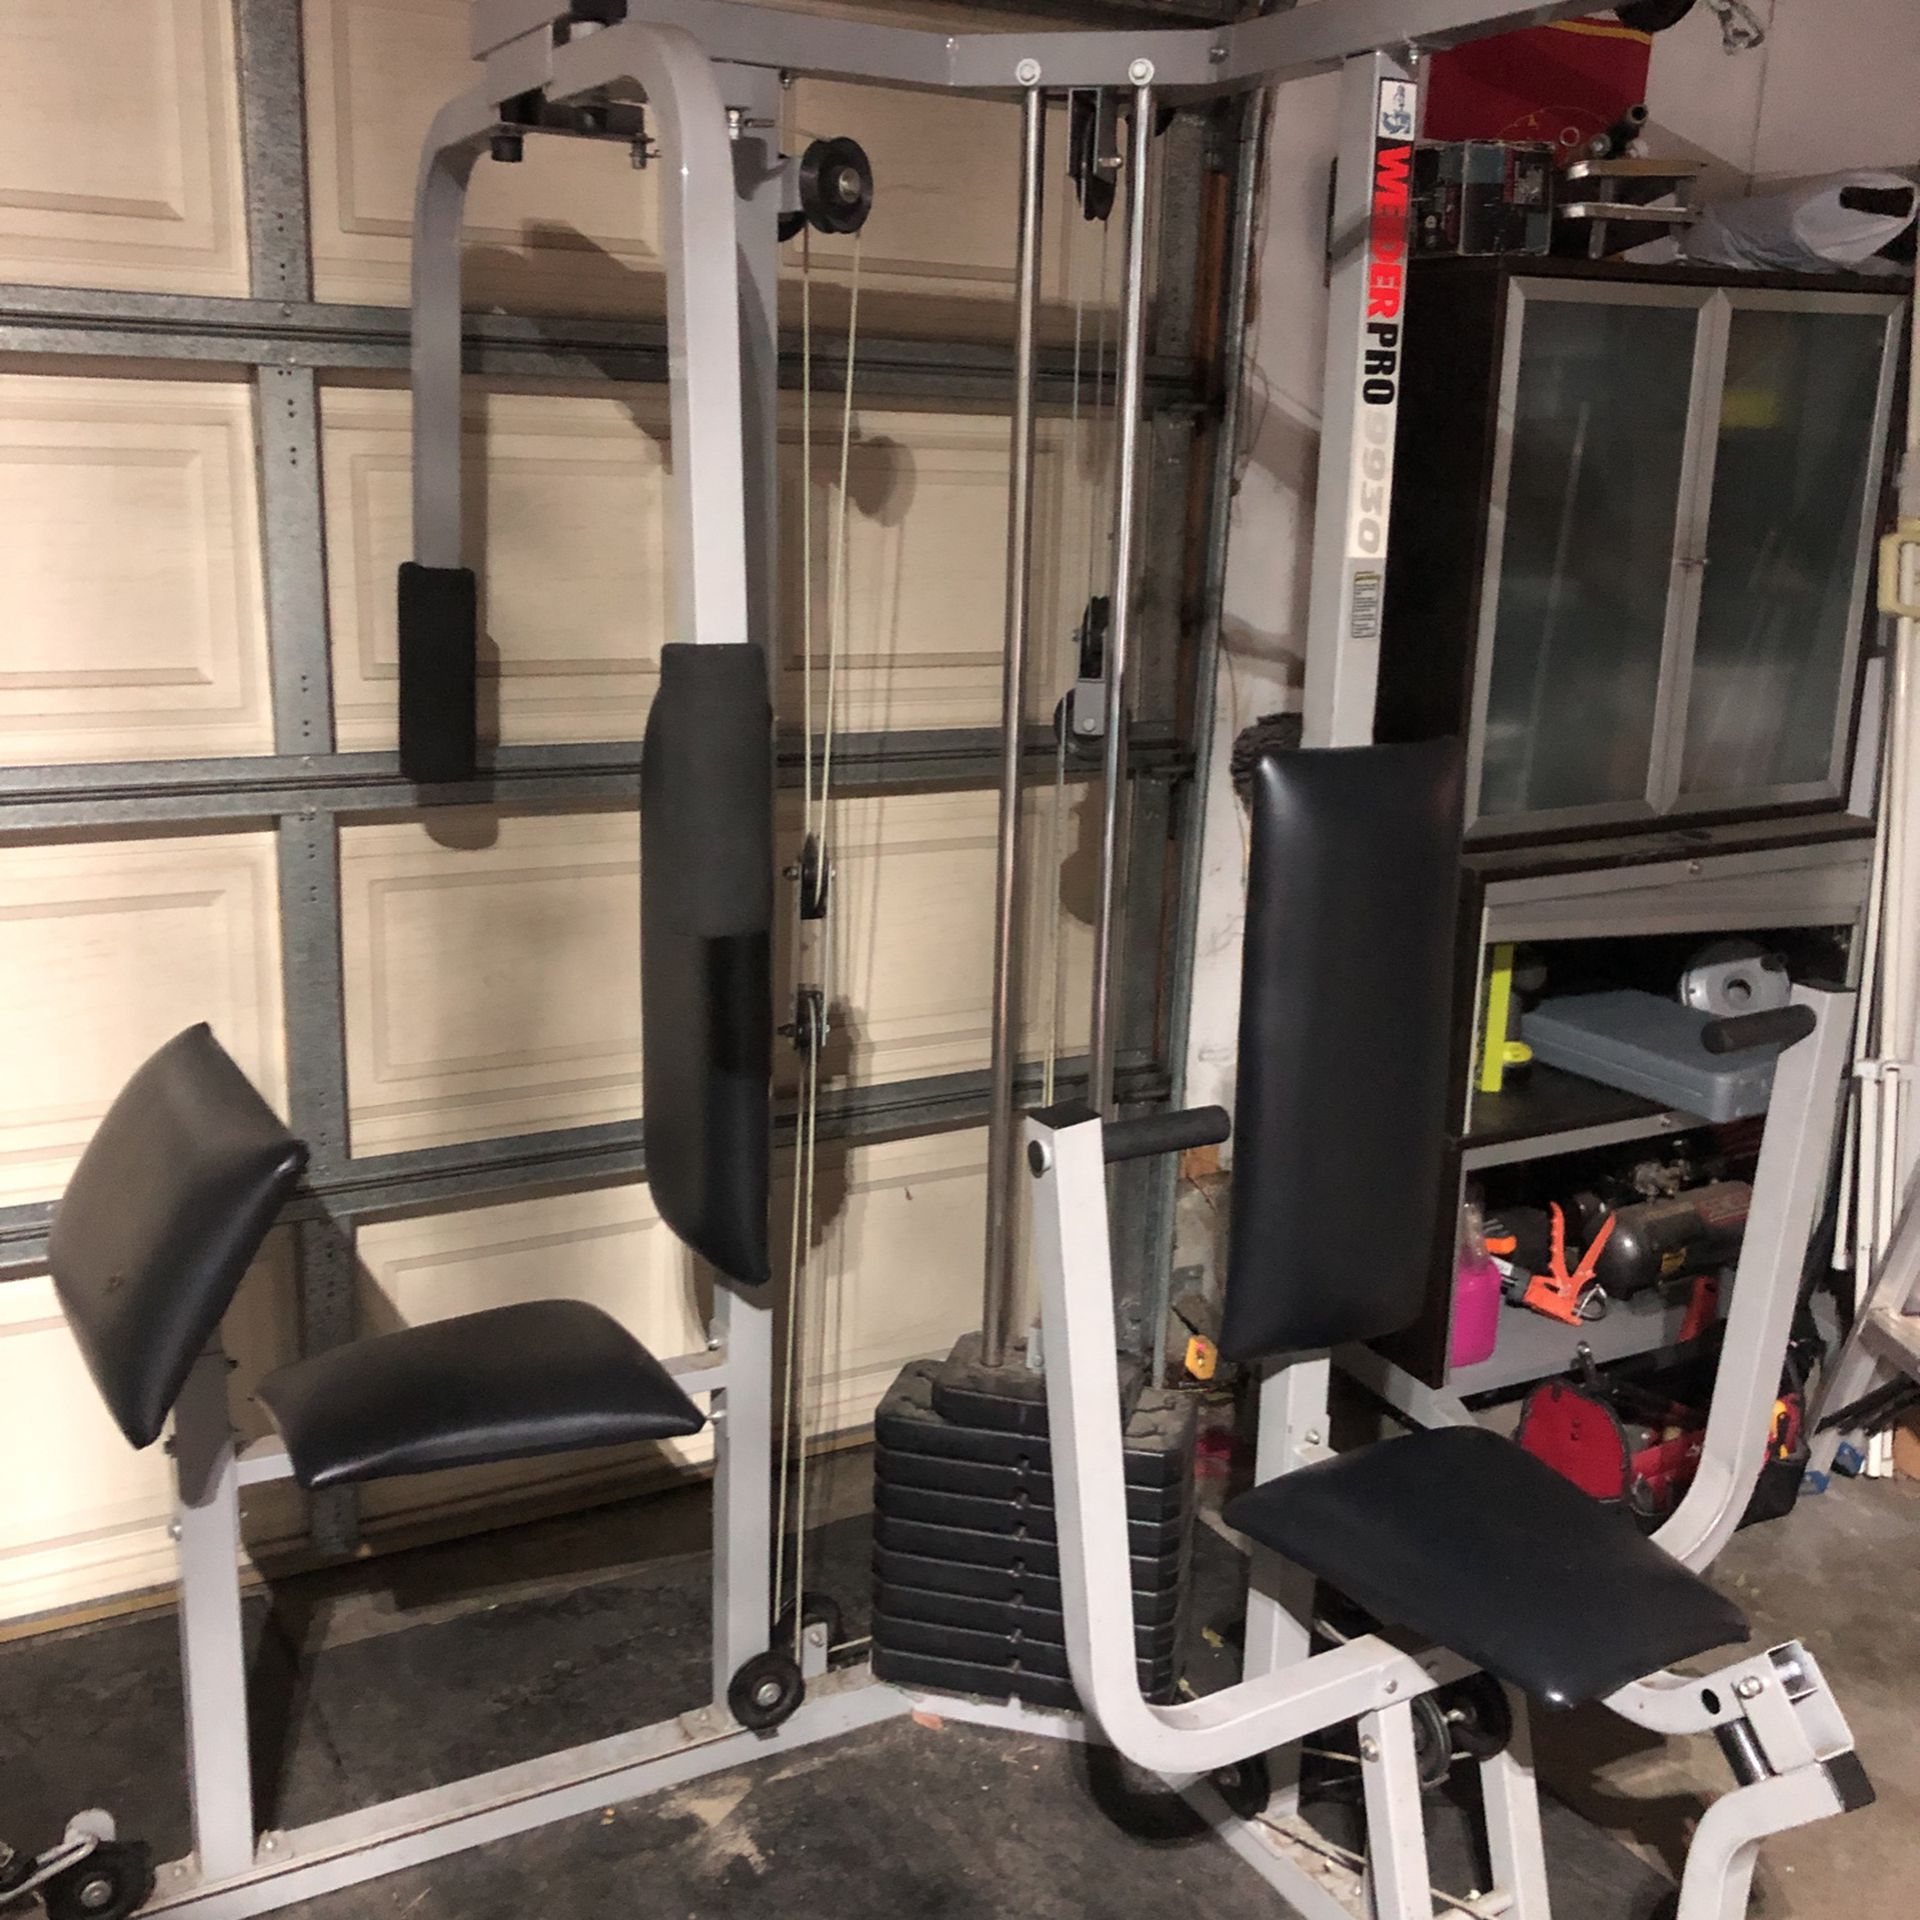 Weirder Pro 9930 Home Gym